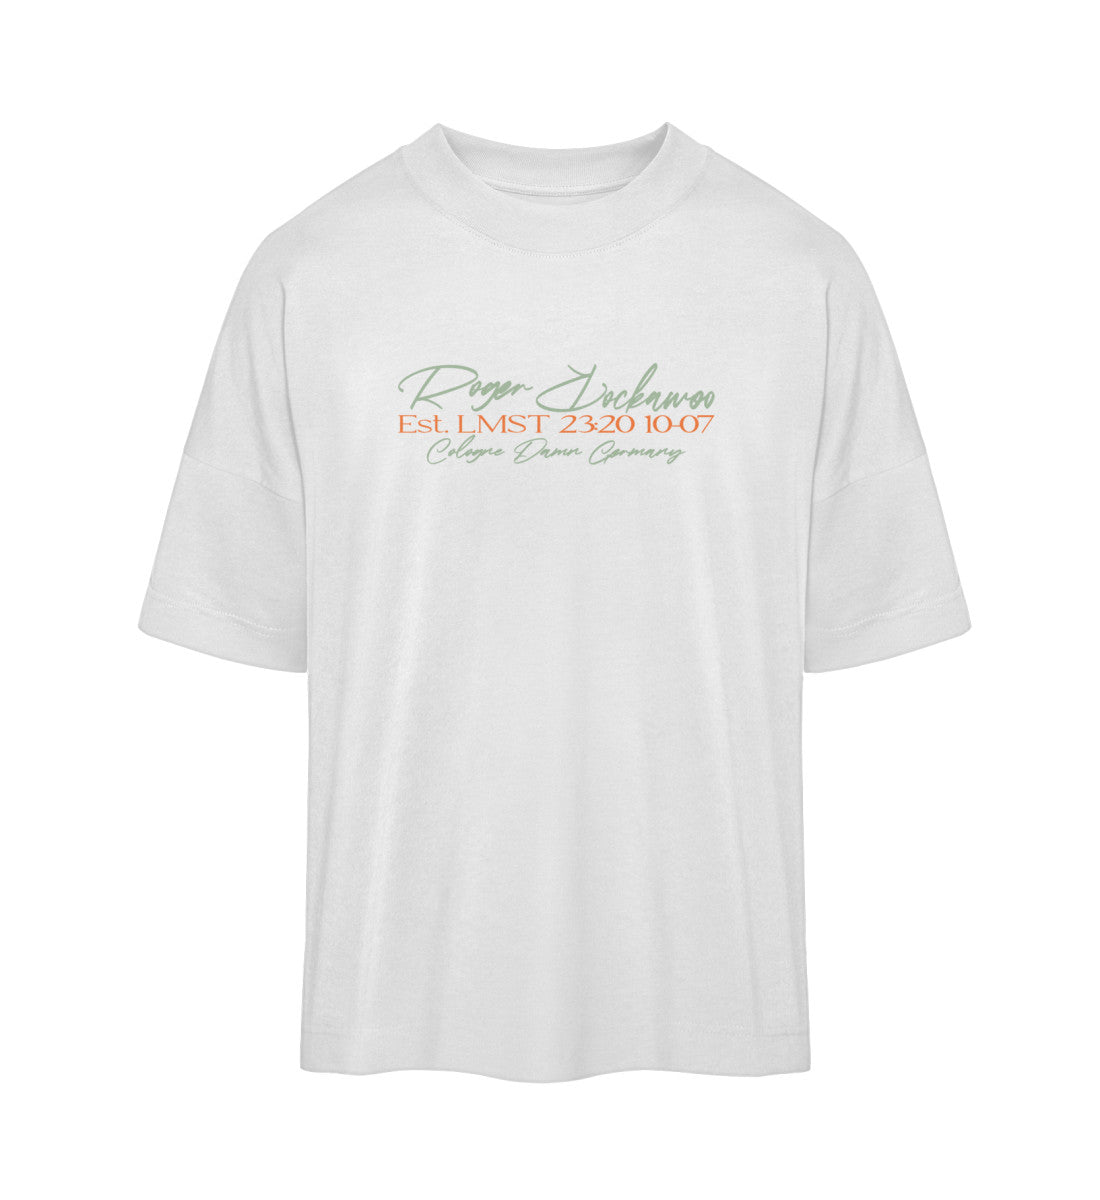 Weißes T-Shirt Unisex Oversize Fit für Frauen und Männer bedruckt mit dem Design der Roger Rockawoo Kollektion basketball 3x3